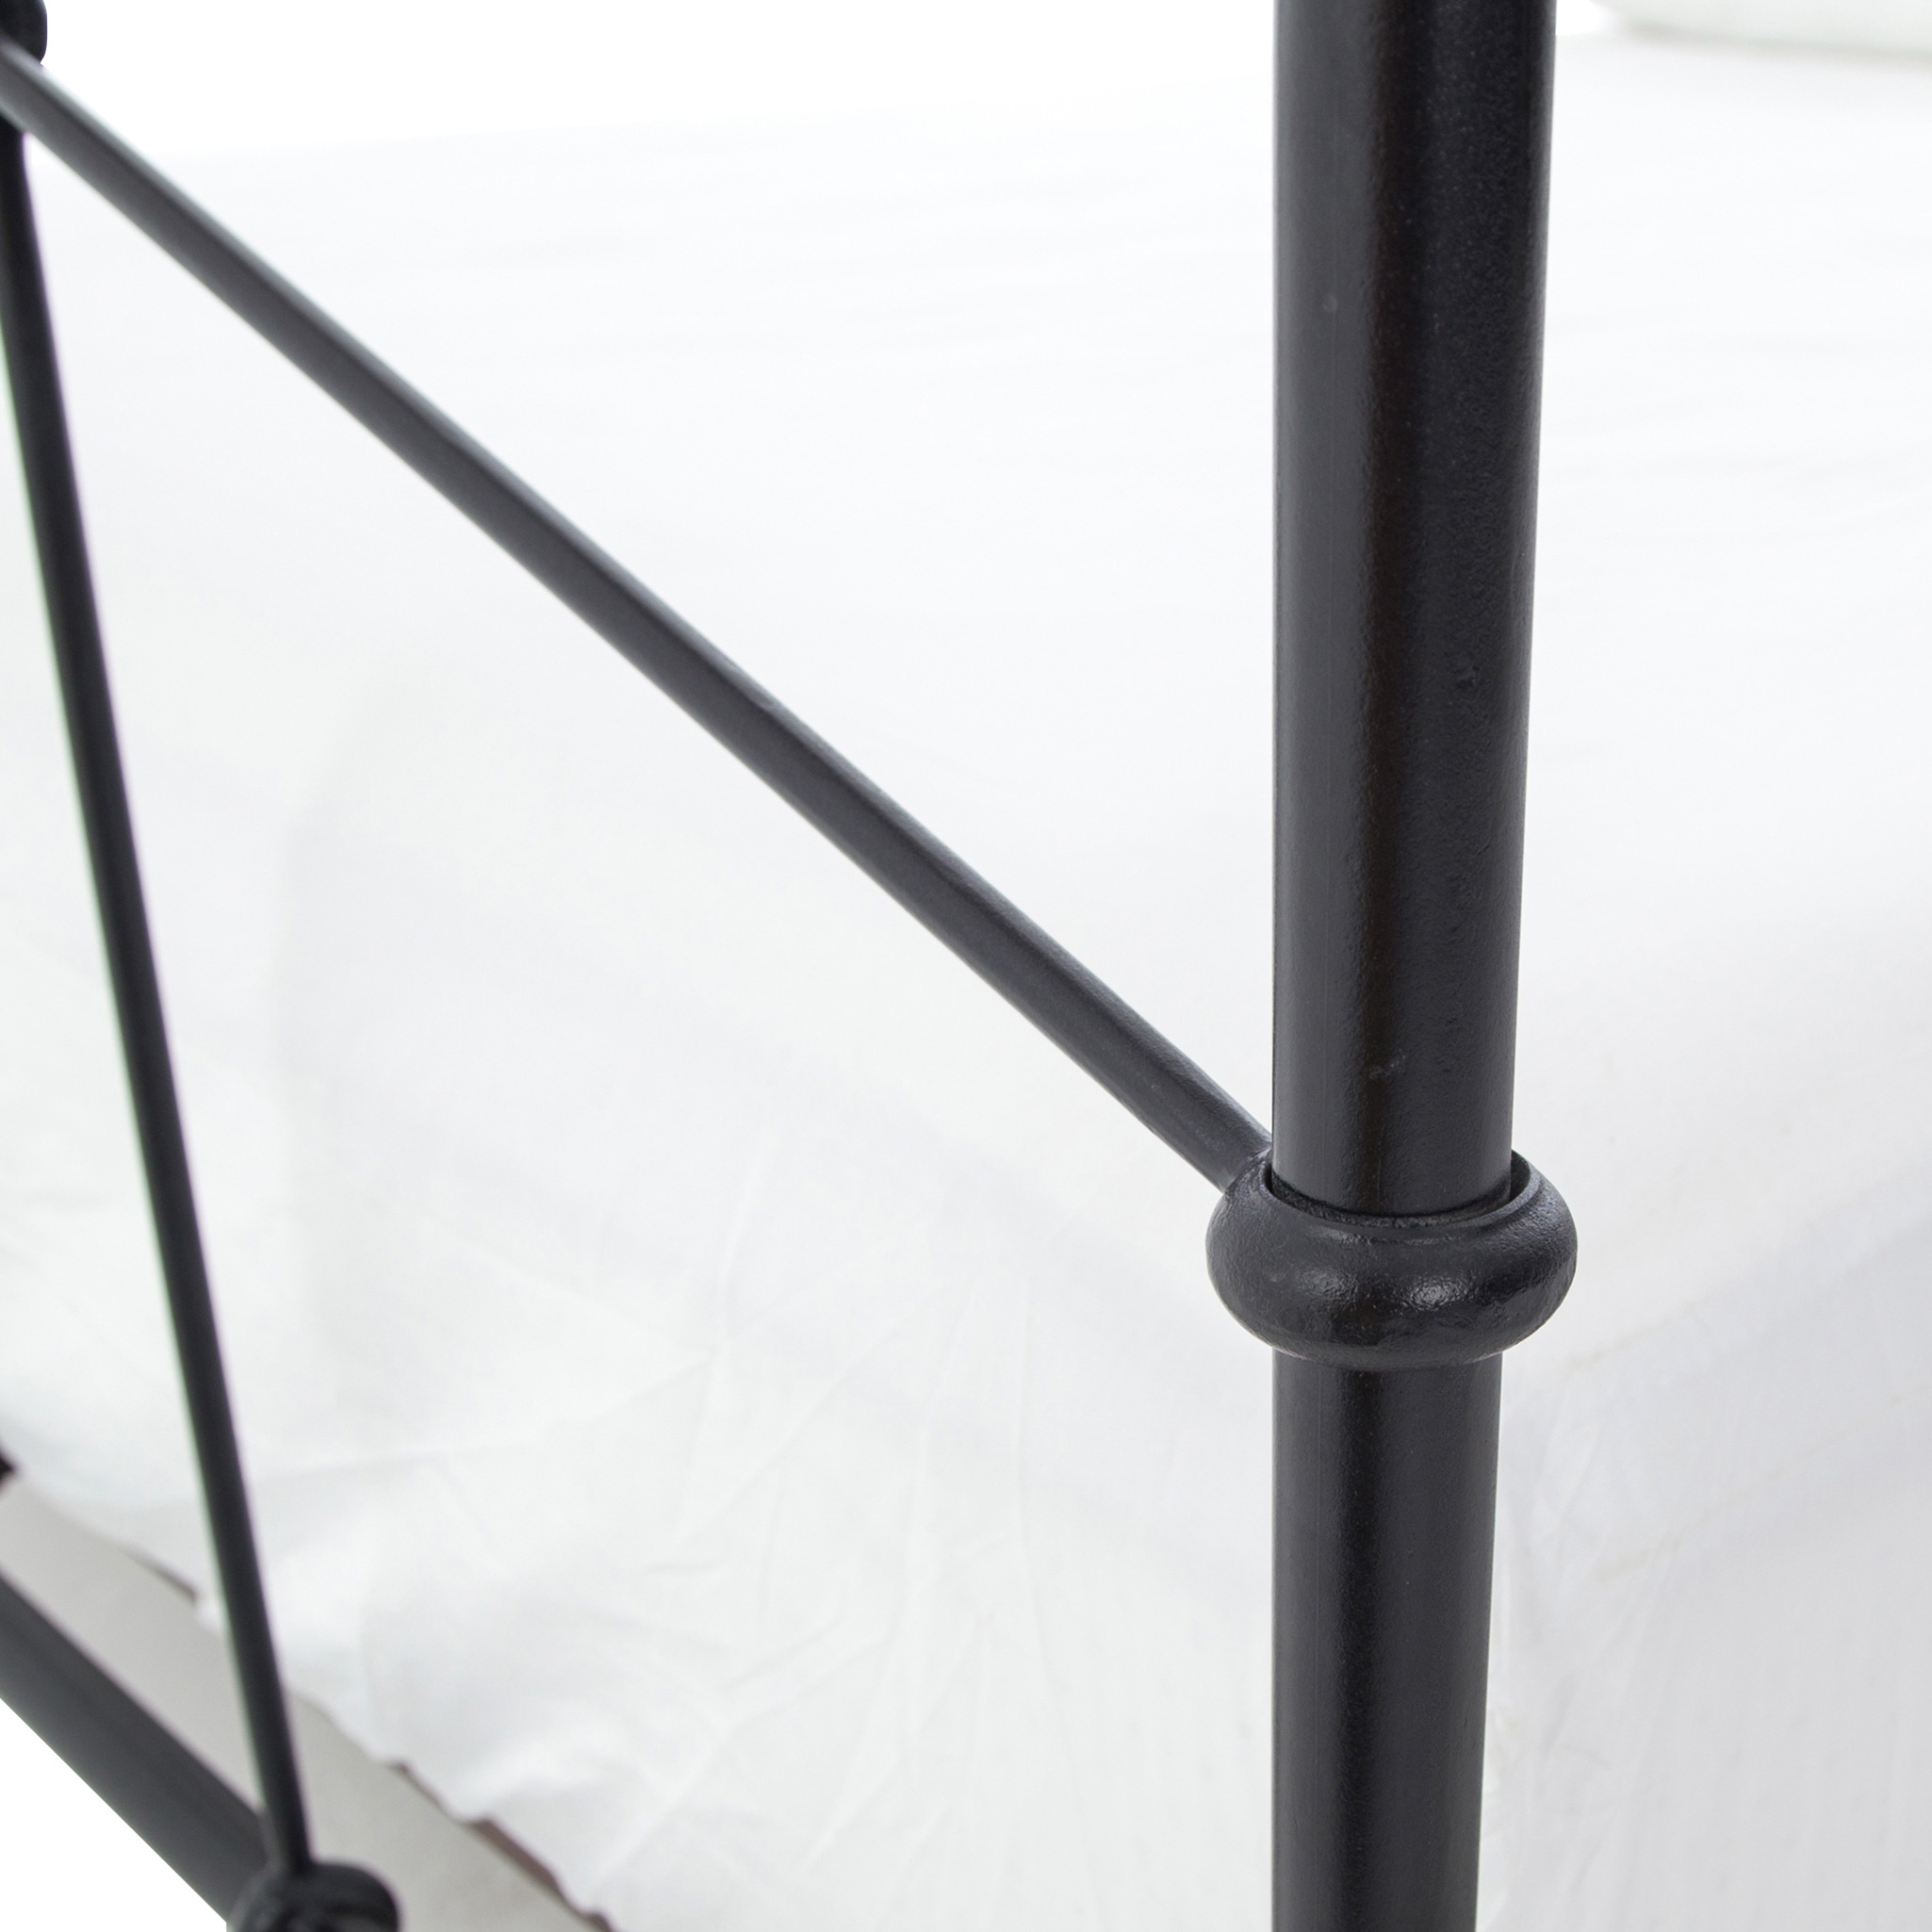 Saar Industrial Loft Black Geometric European Design Iron Bed - Queen - Image 3